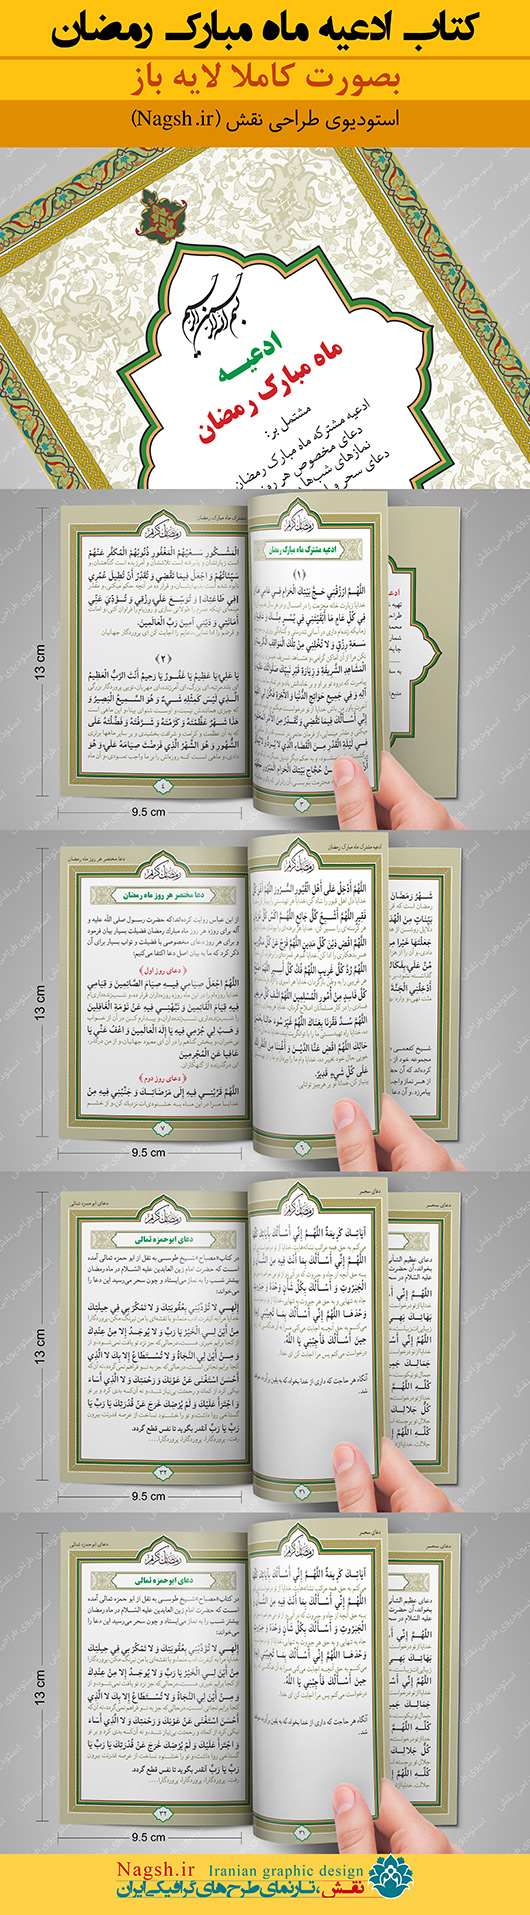 کتاب لایه باز ادعیه رمضان